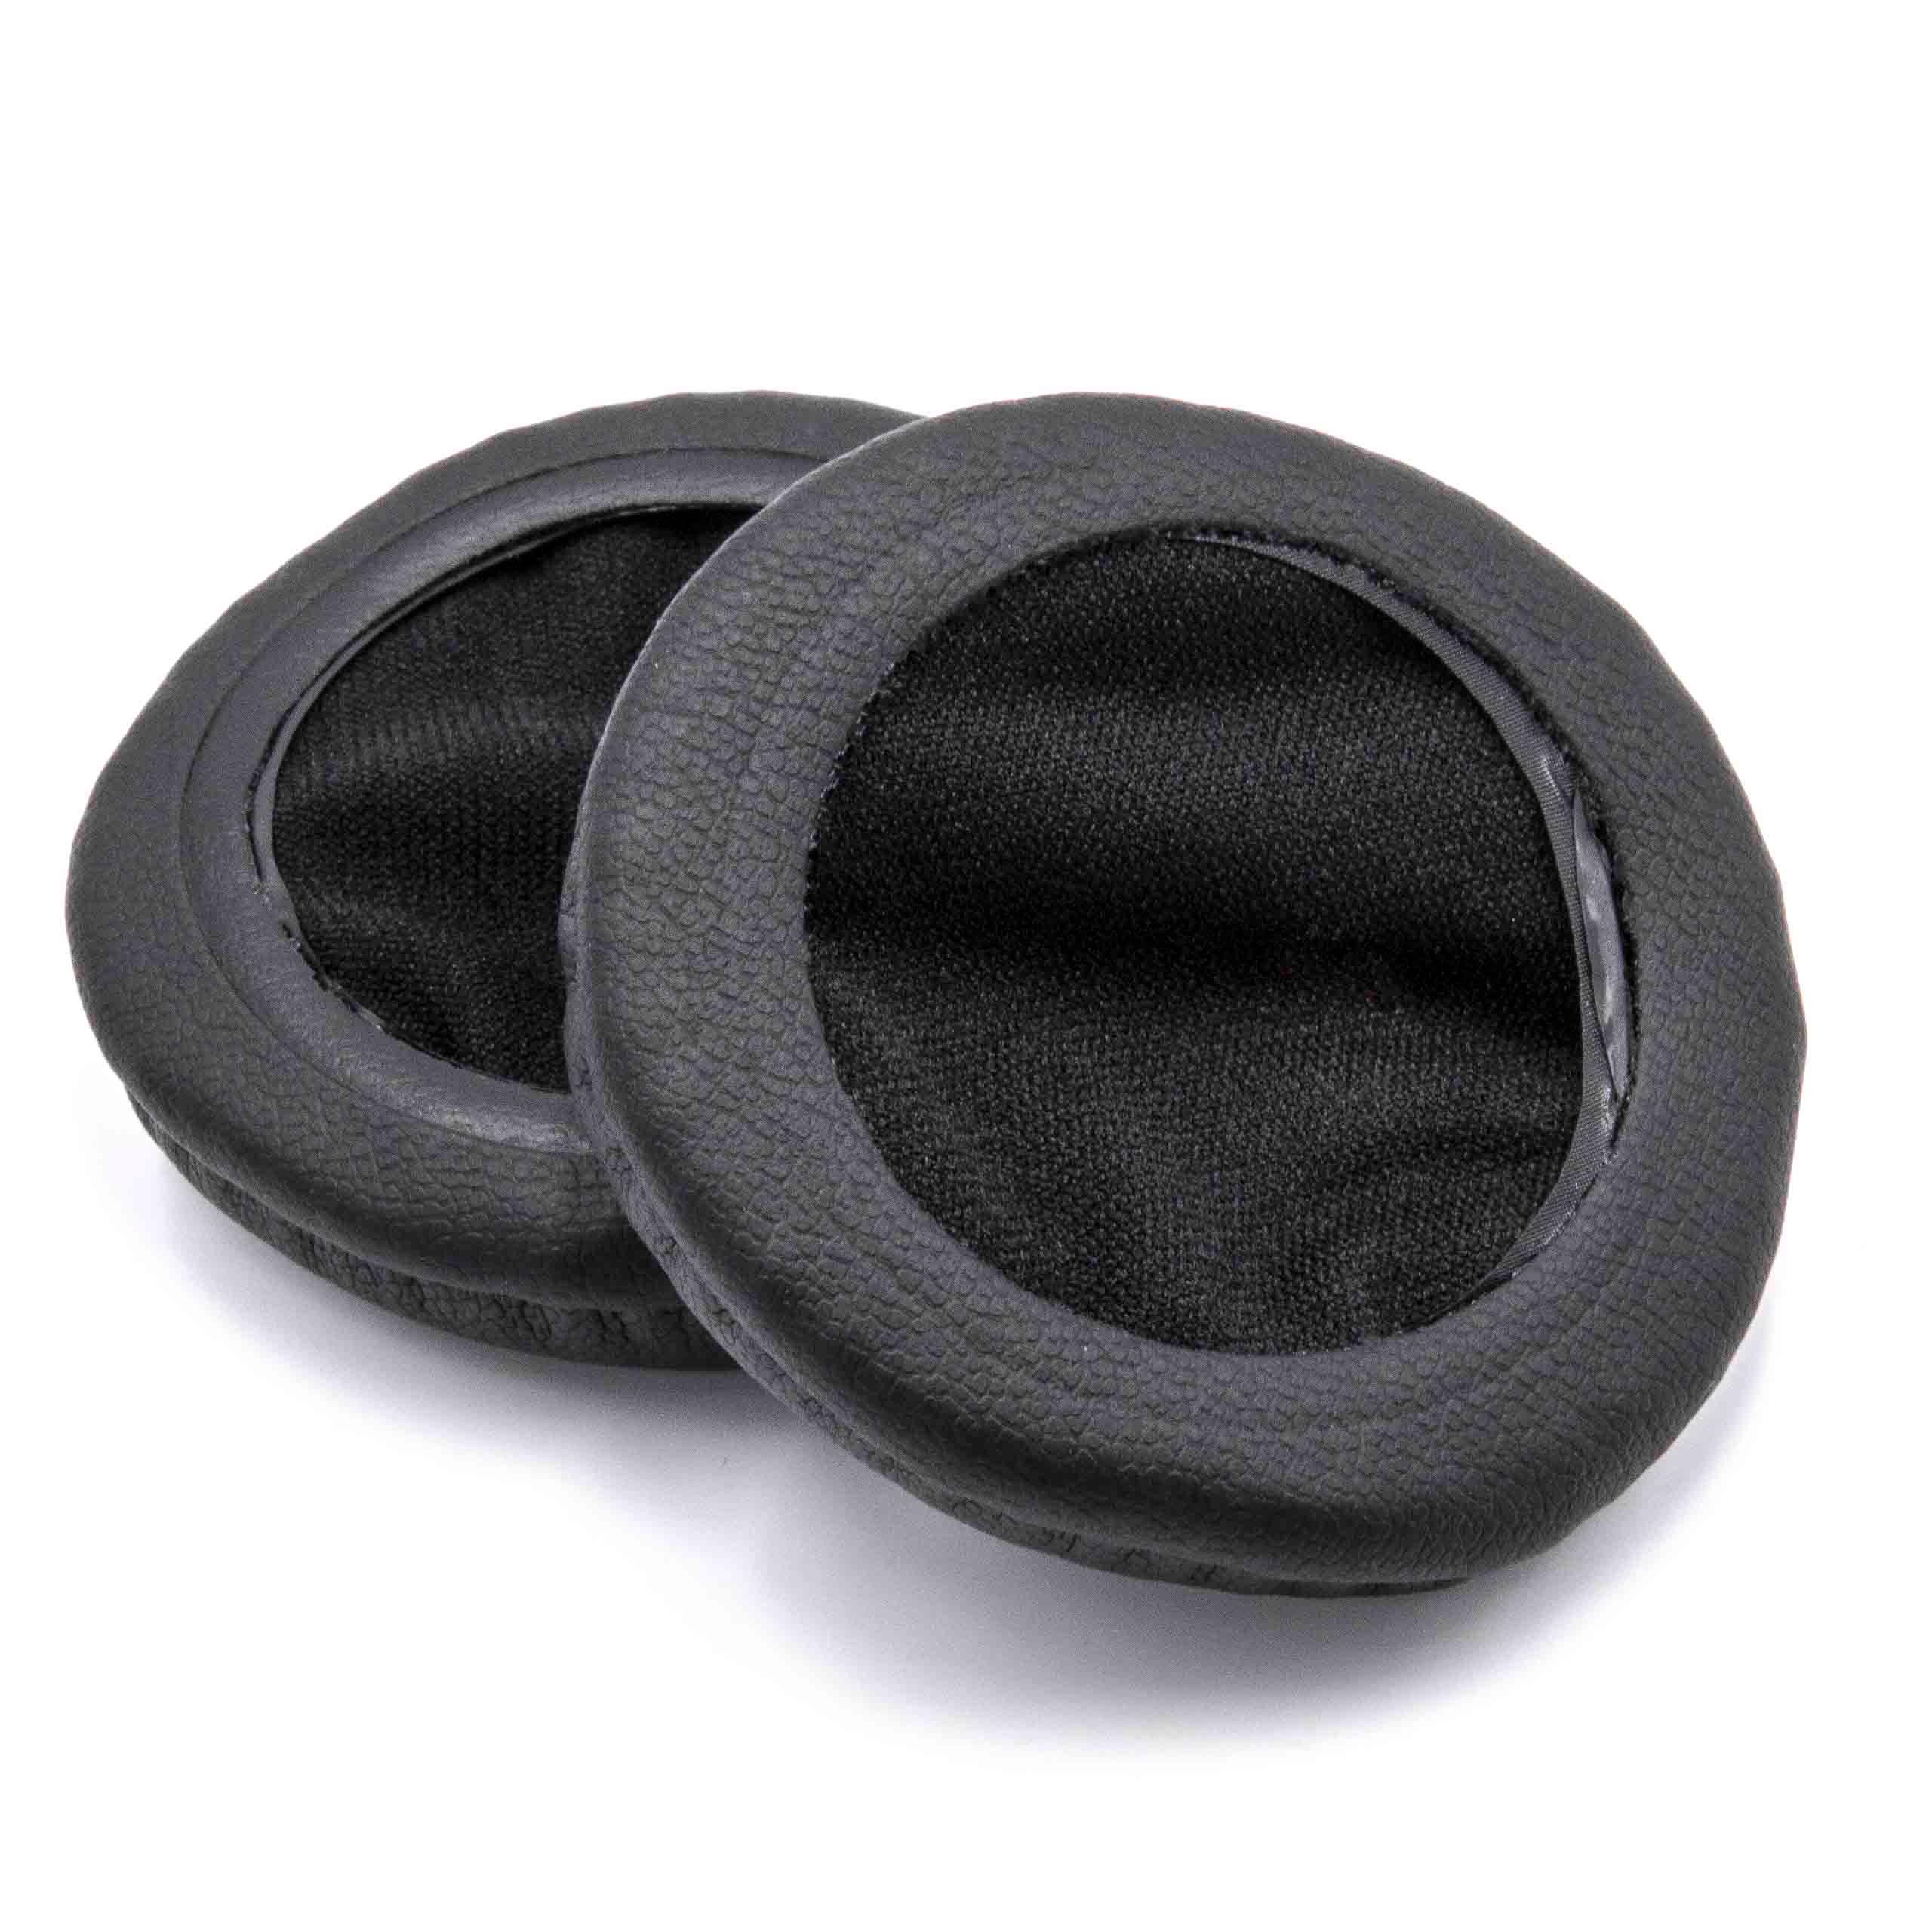 2x 1 paio di cuscinetti - poliuretano, 5,5 cm diametro esterno, nero